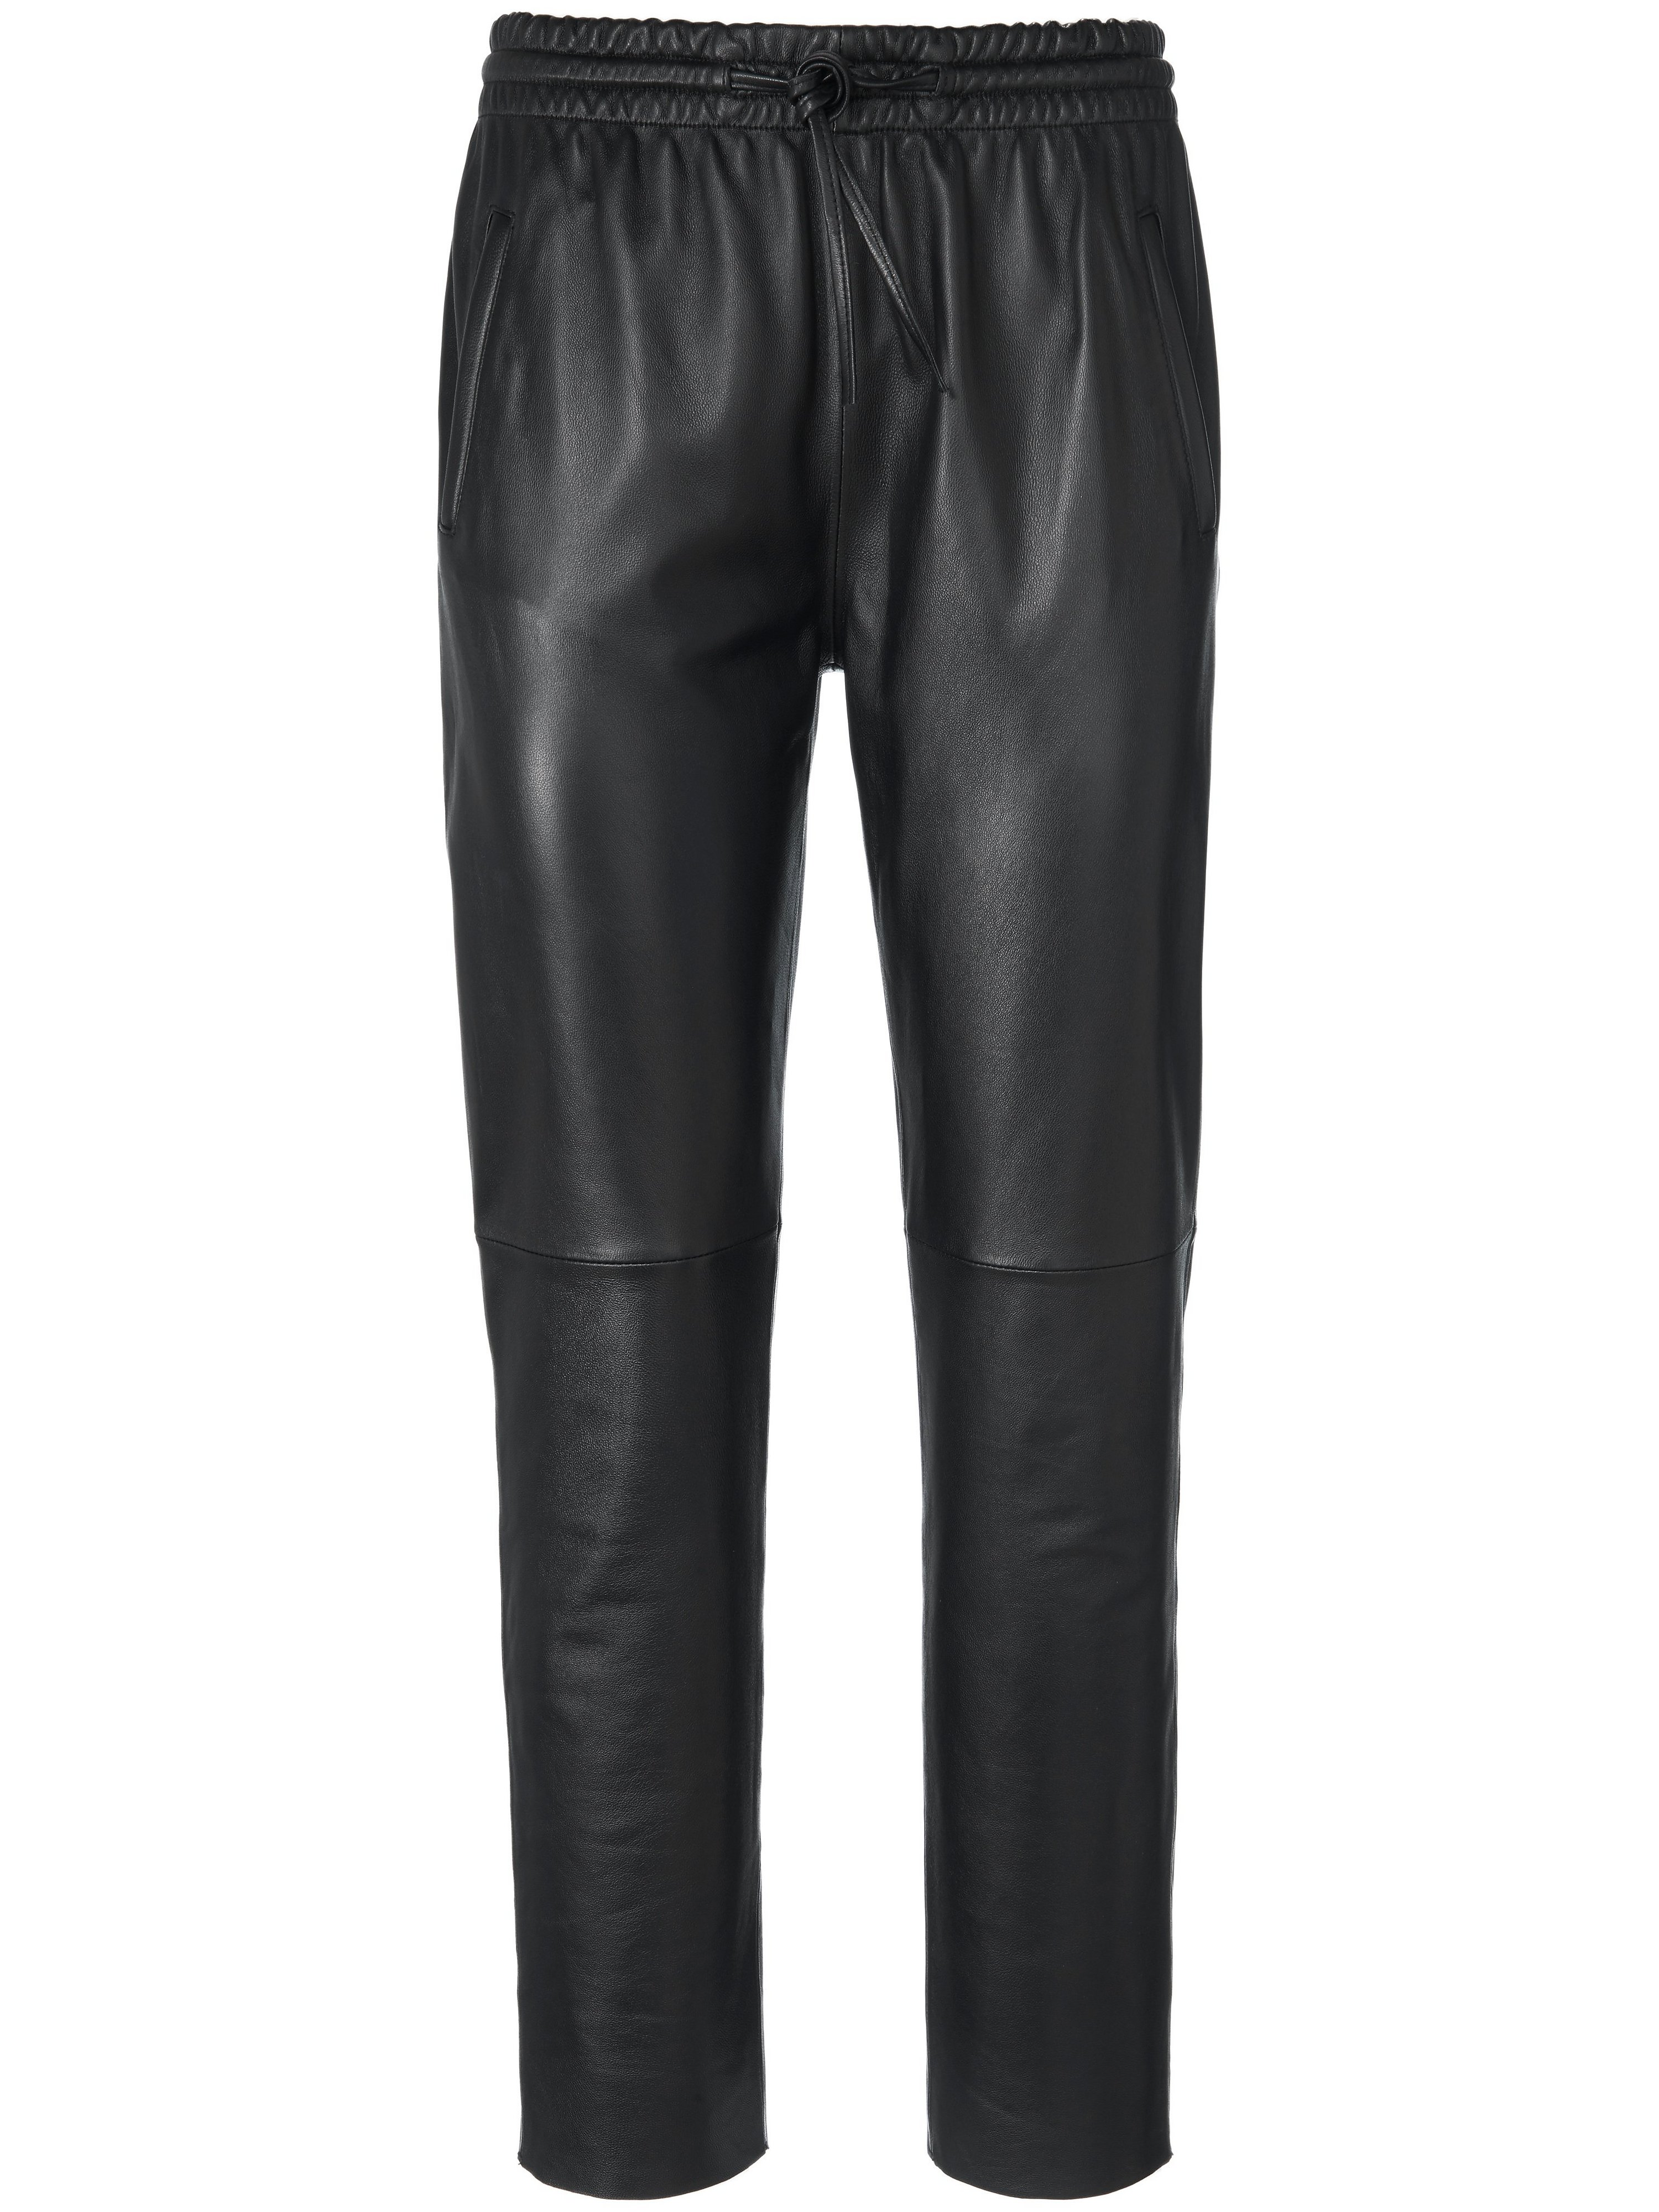 Le pantalon cuir  Uta Raasch noir taille 44